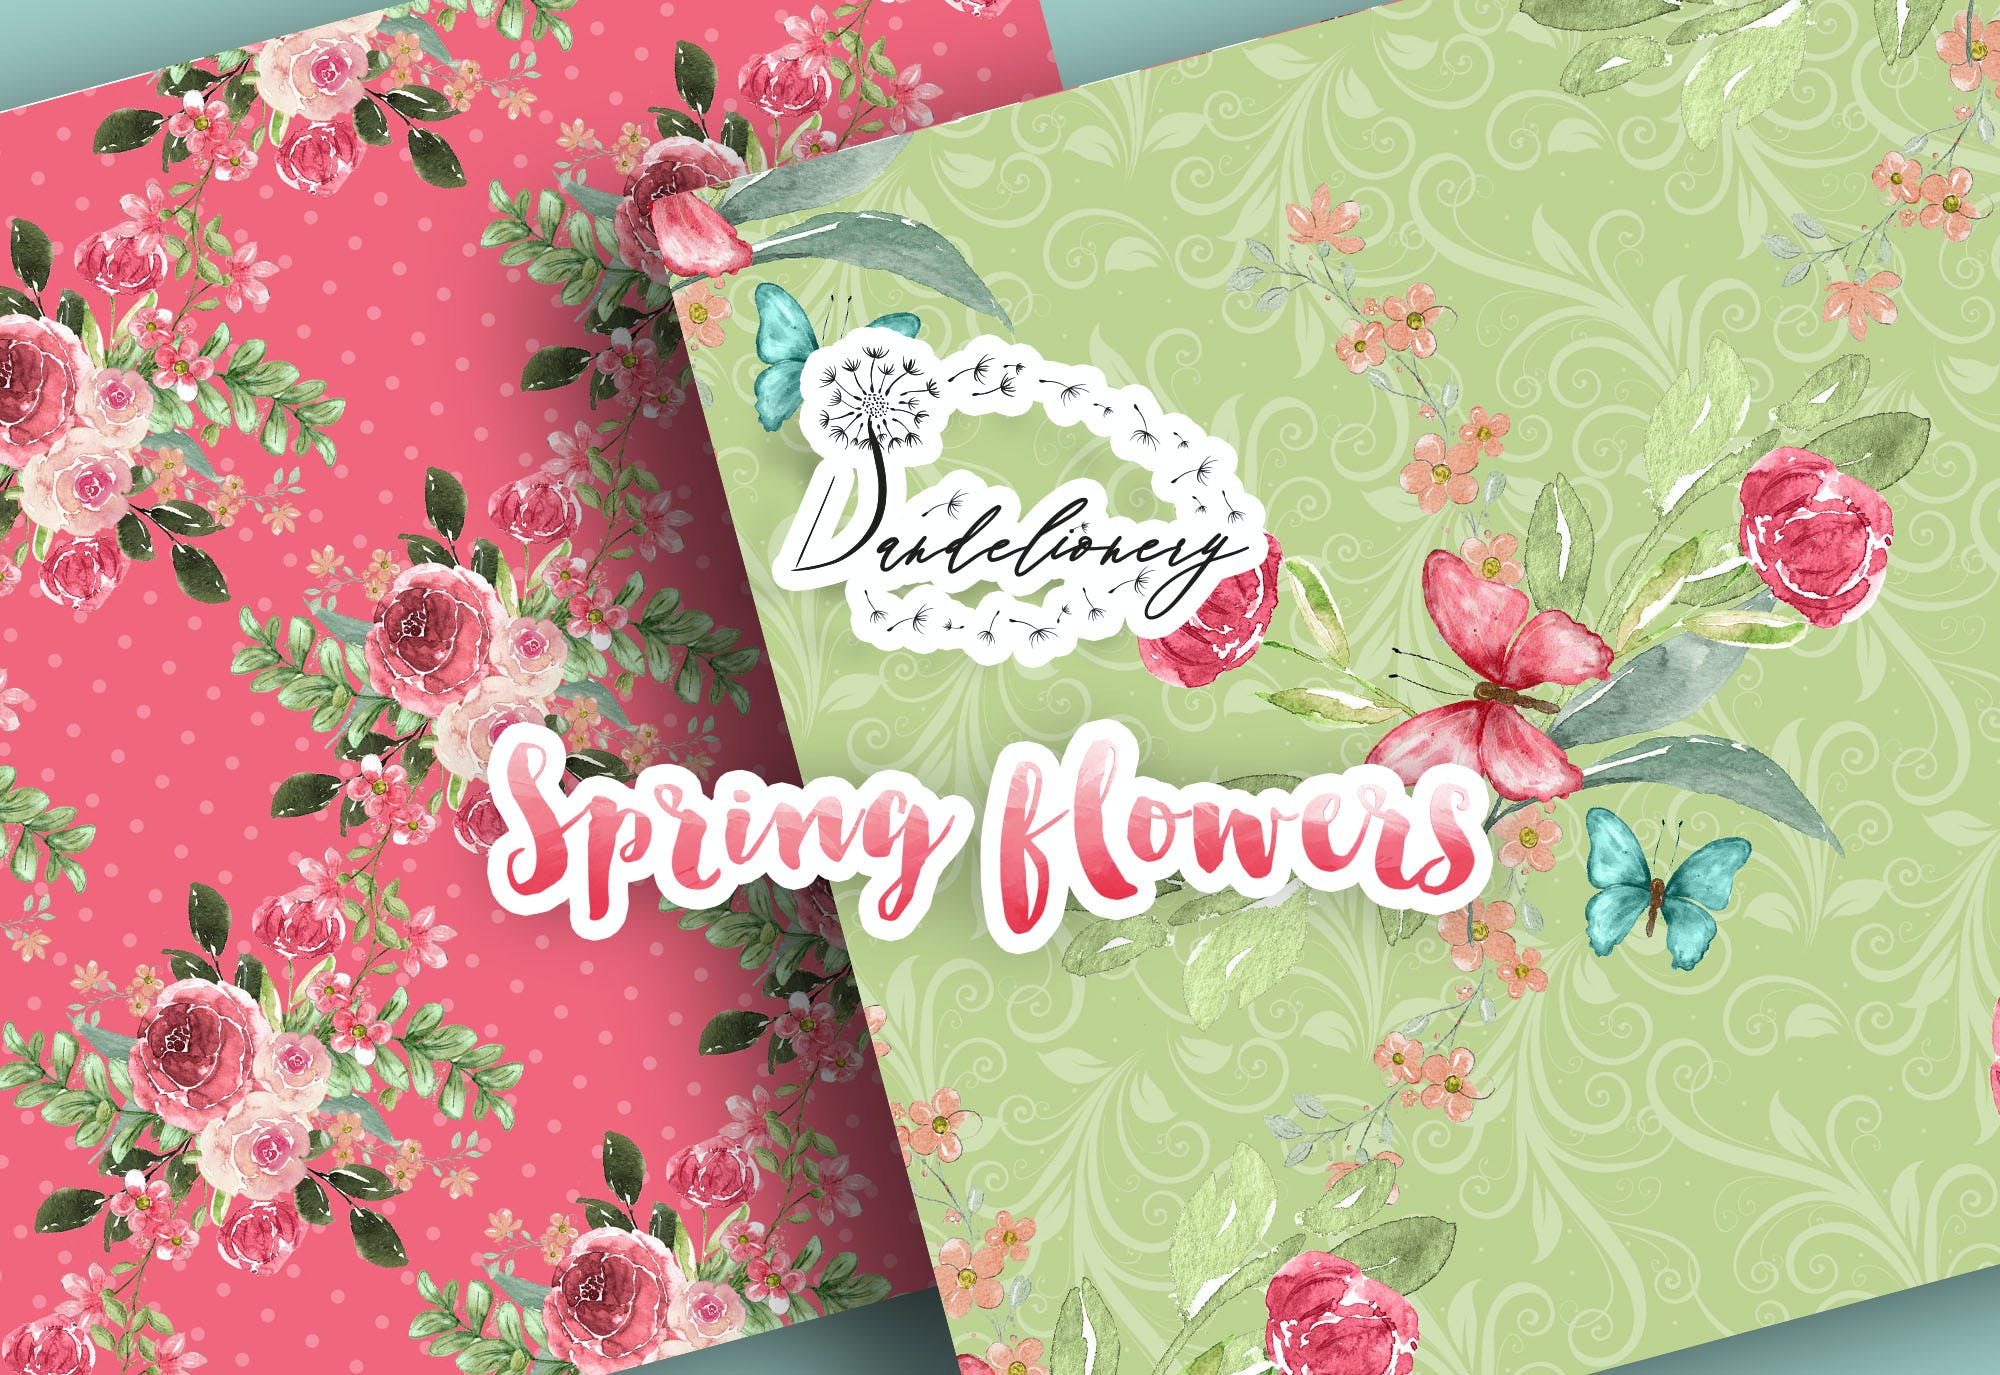 水彩春天花朵数码纸图案素材包 Spring flowers digital paper pack 设计素材 第3张